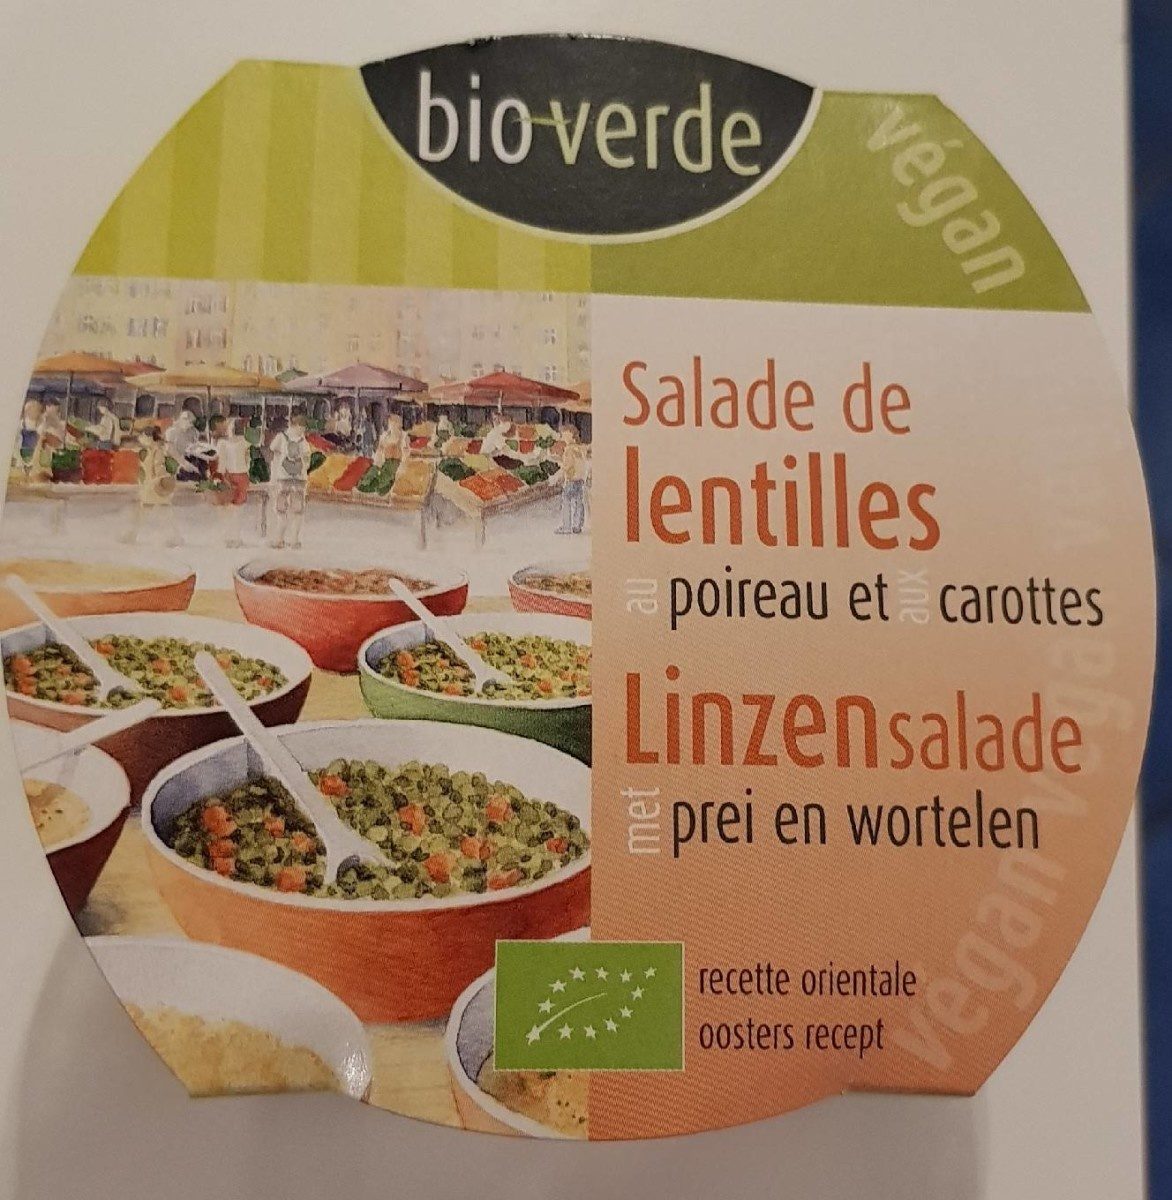 Salade de lentilles poireau/carottes - Produit